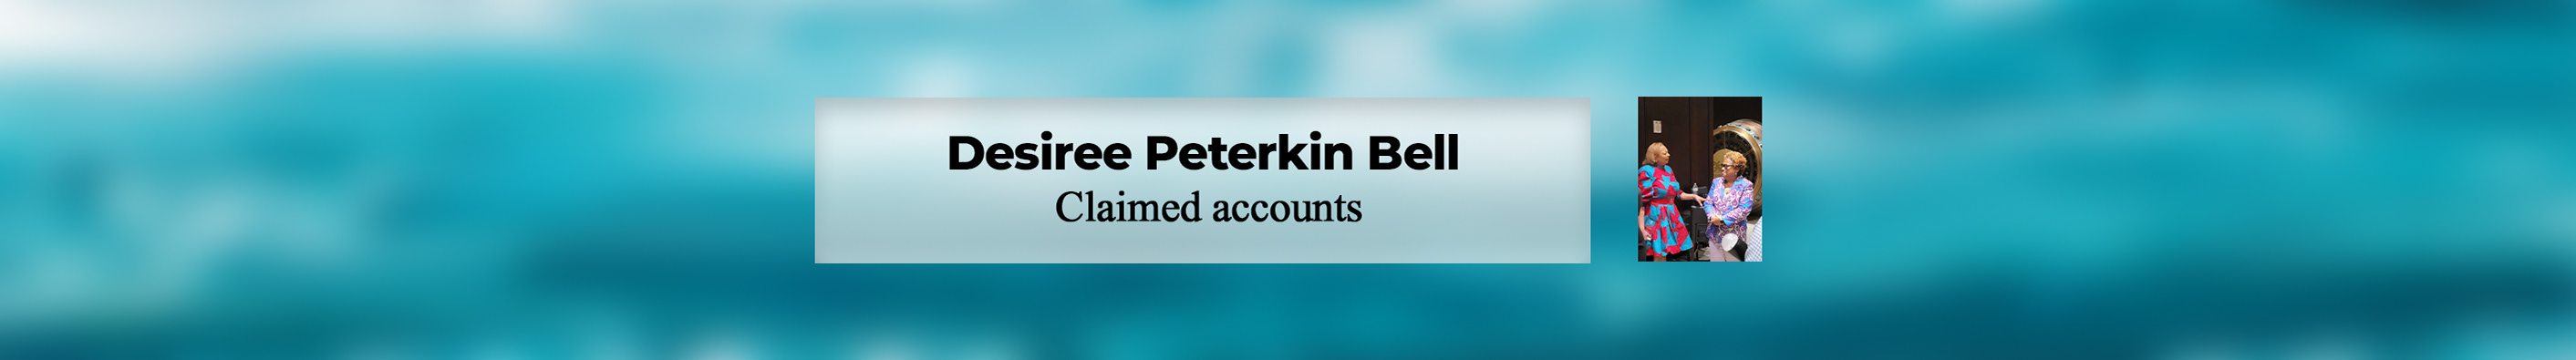 Desiree Peterkin Bell's profile banner